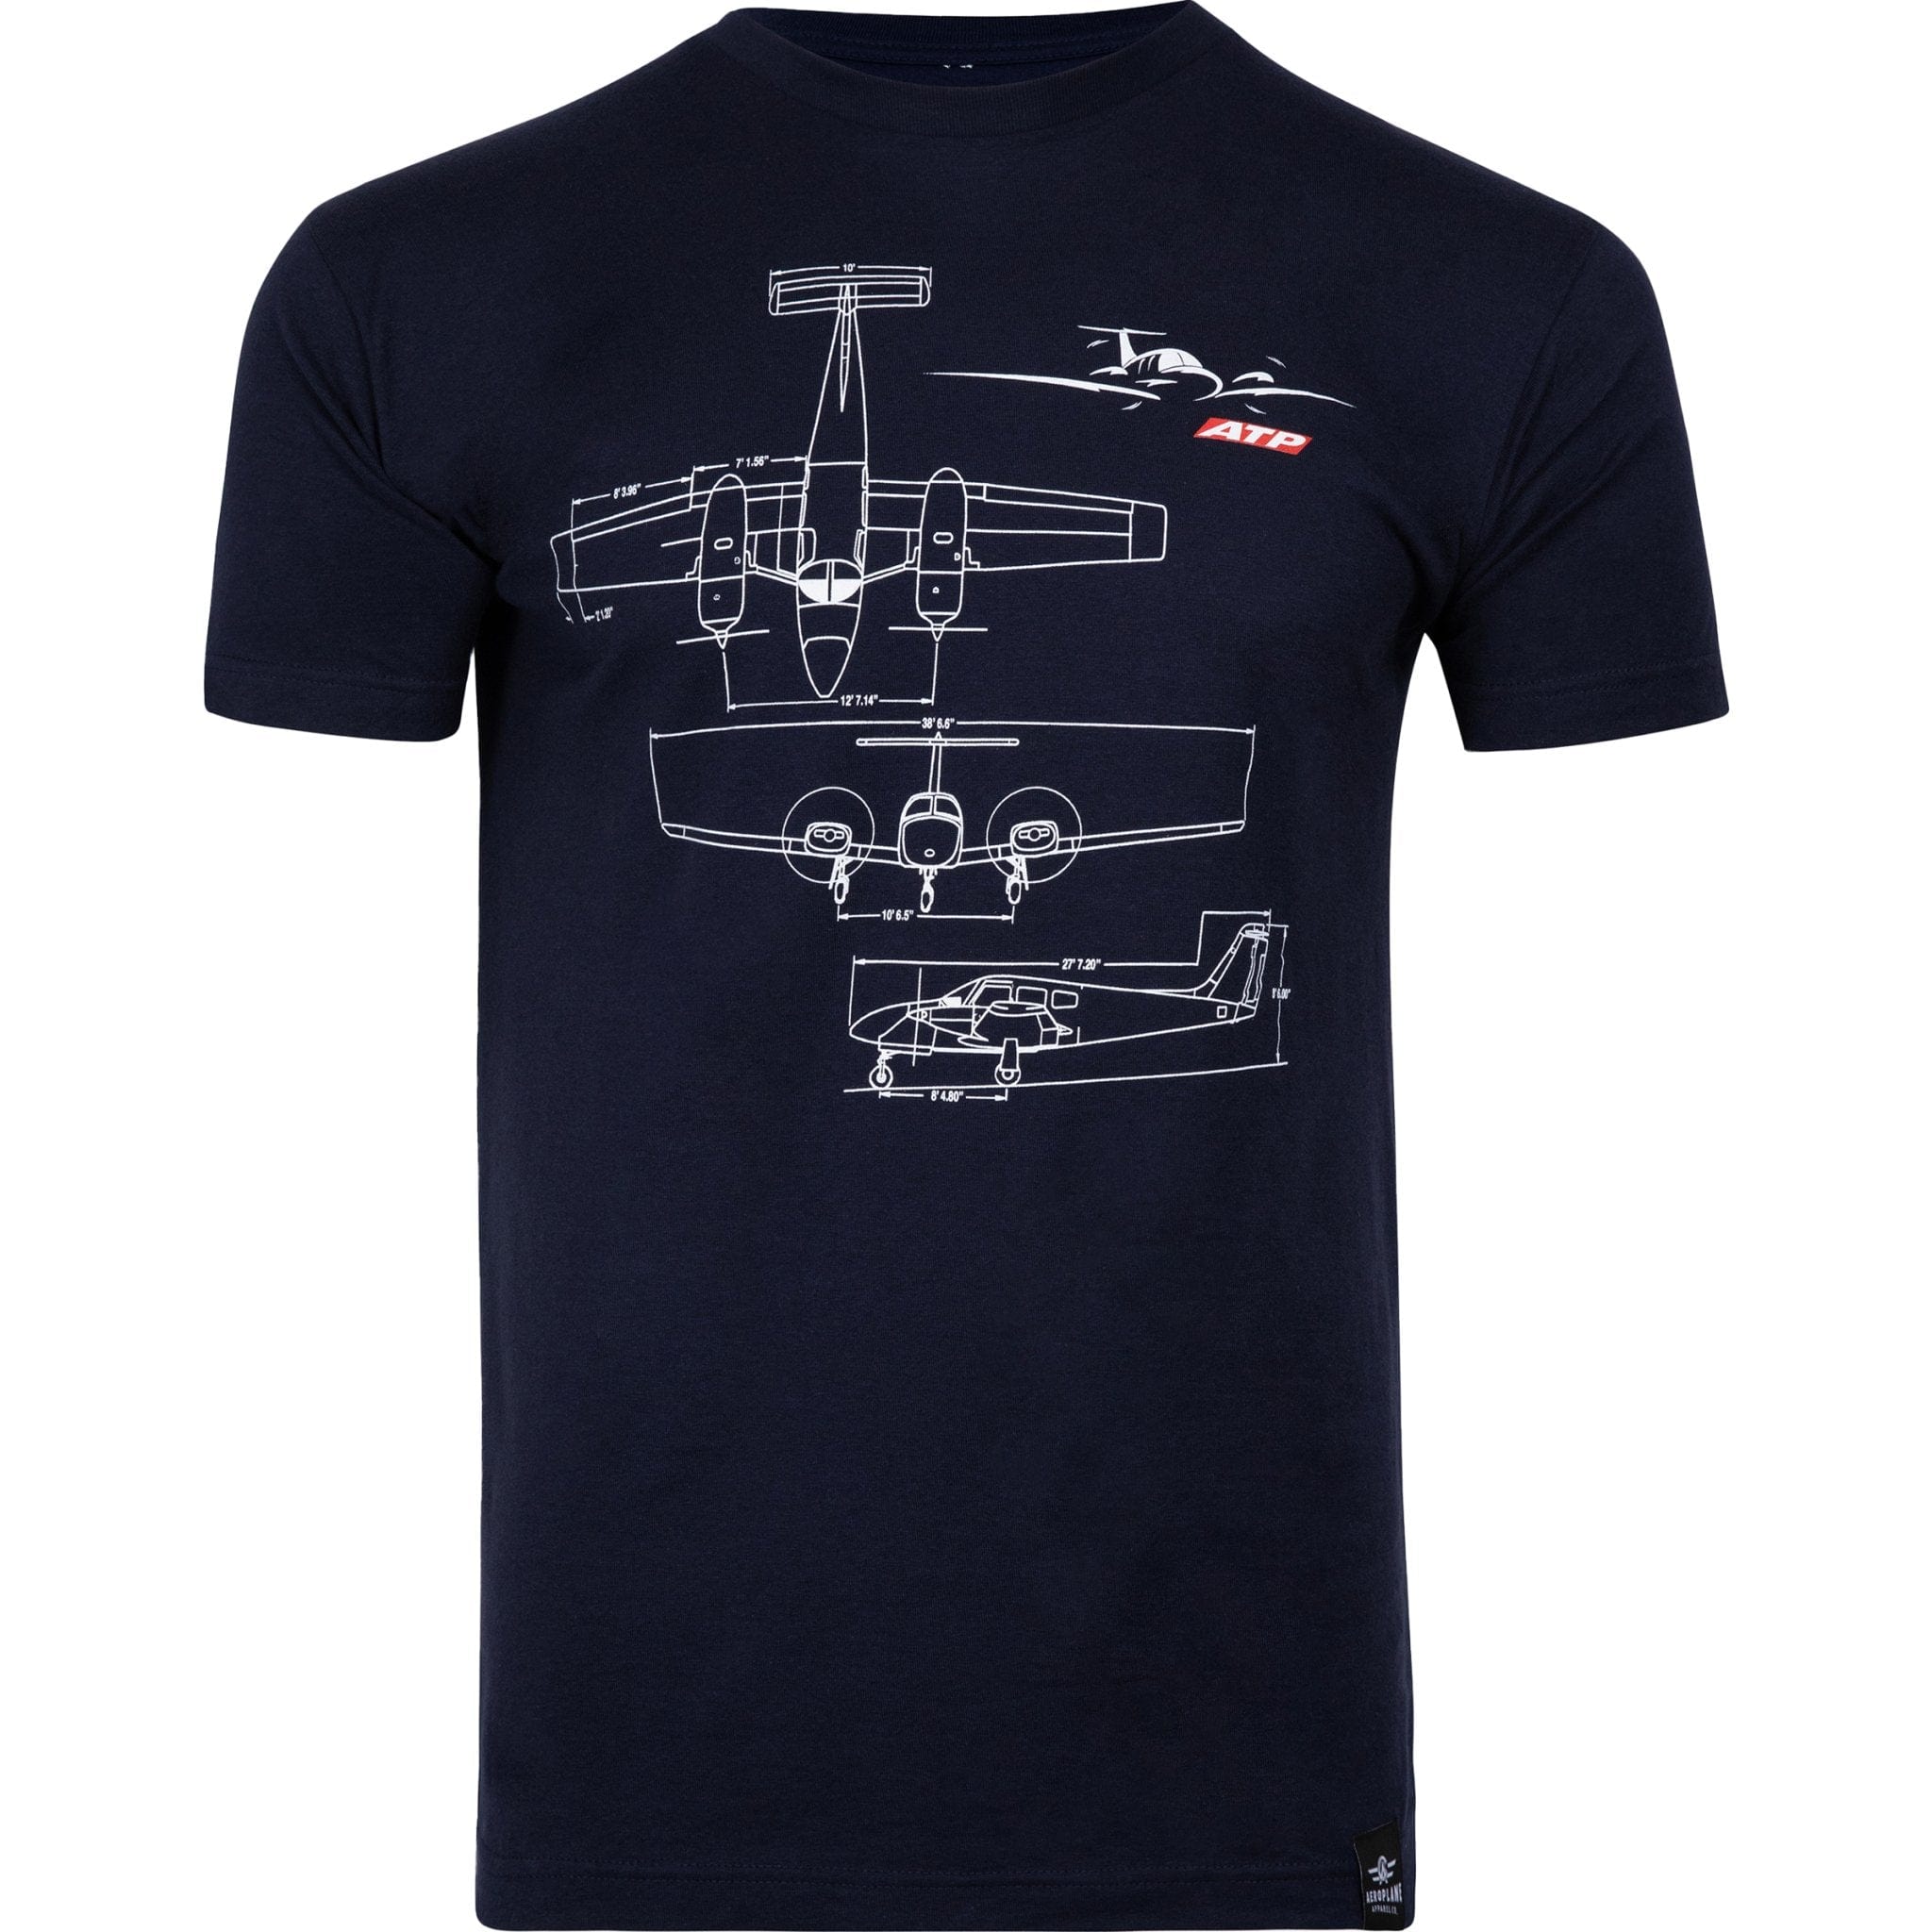 ATP Schematics T-Shirt